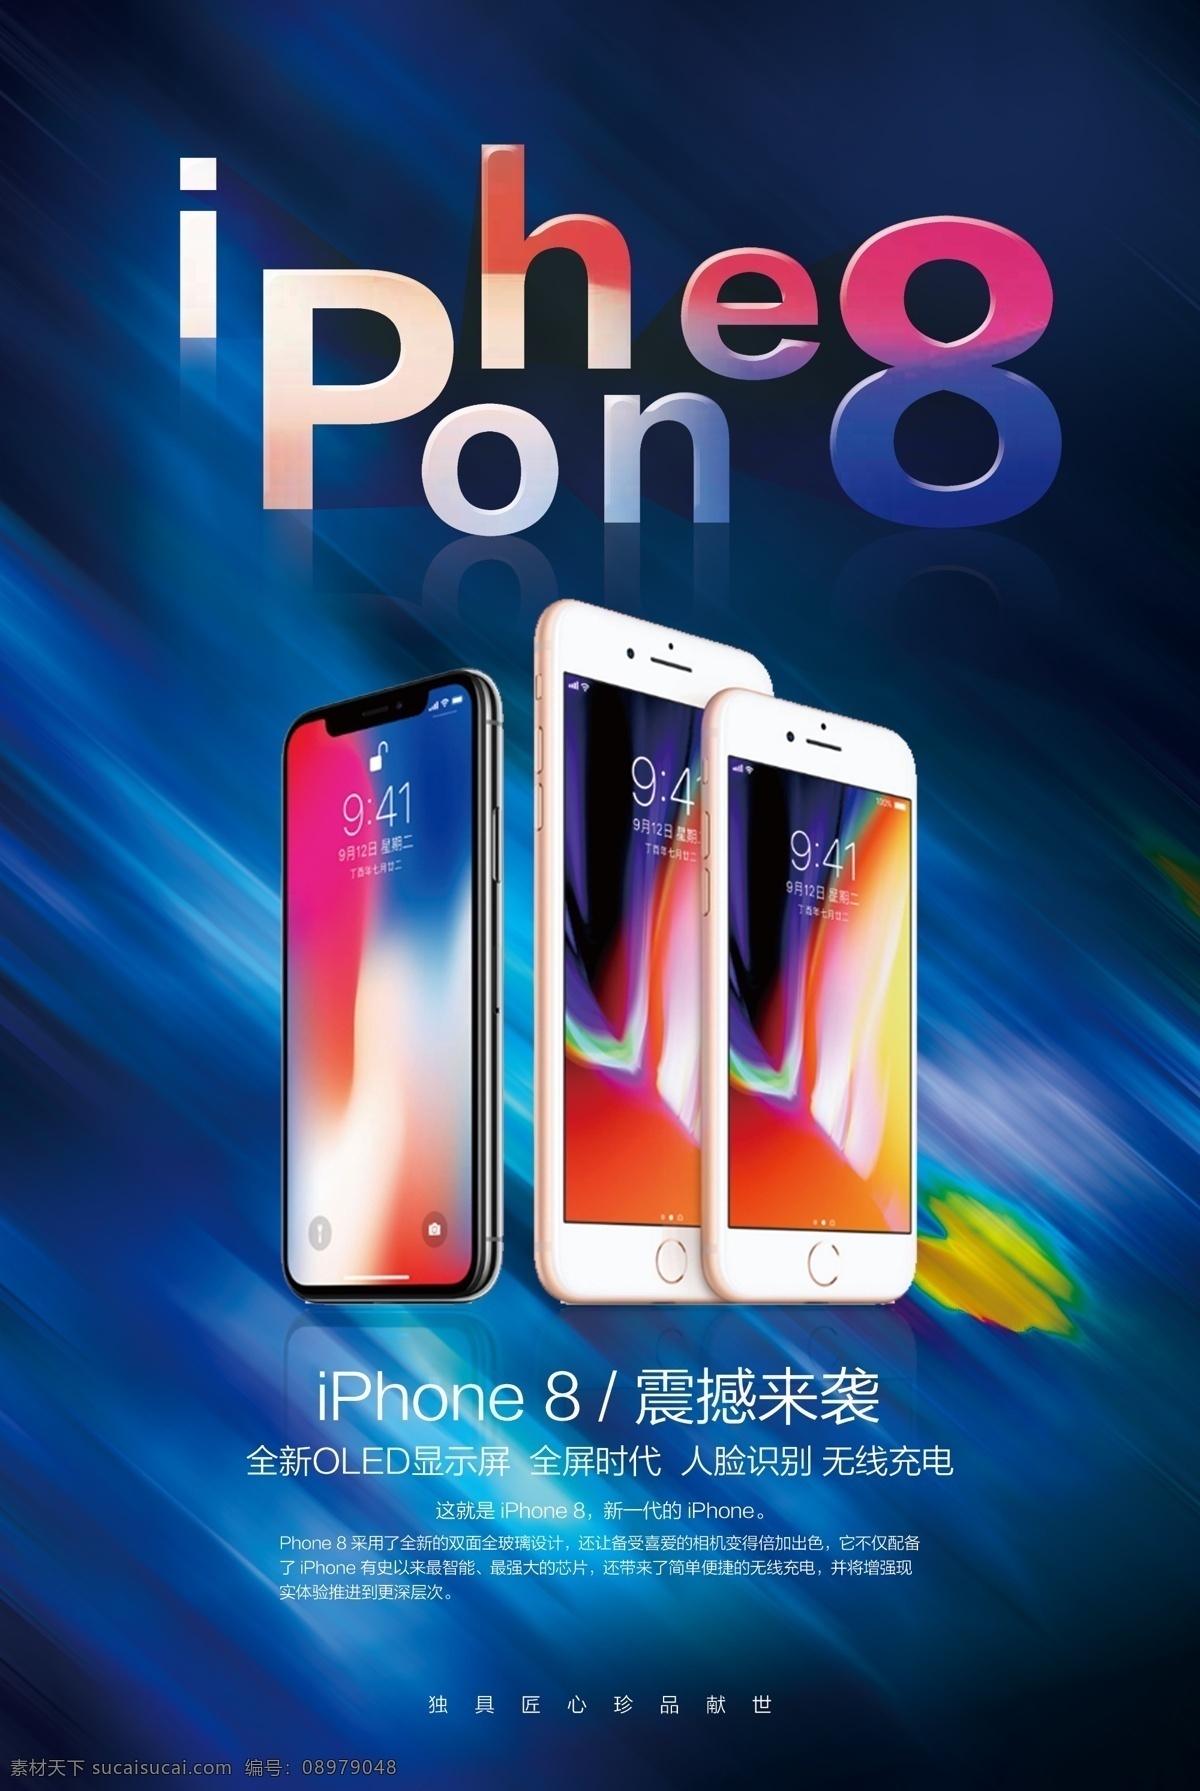 2017 炫丽 大气 iphone8 手机 海报 源文件 苹果 苹果手机 苹果8海报 苹果8 宣传海报 苹果宣传海报 广告